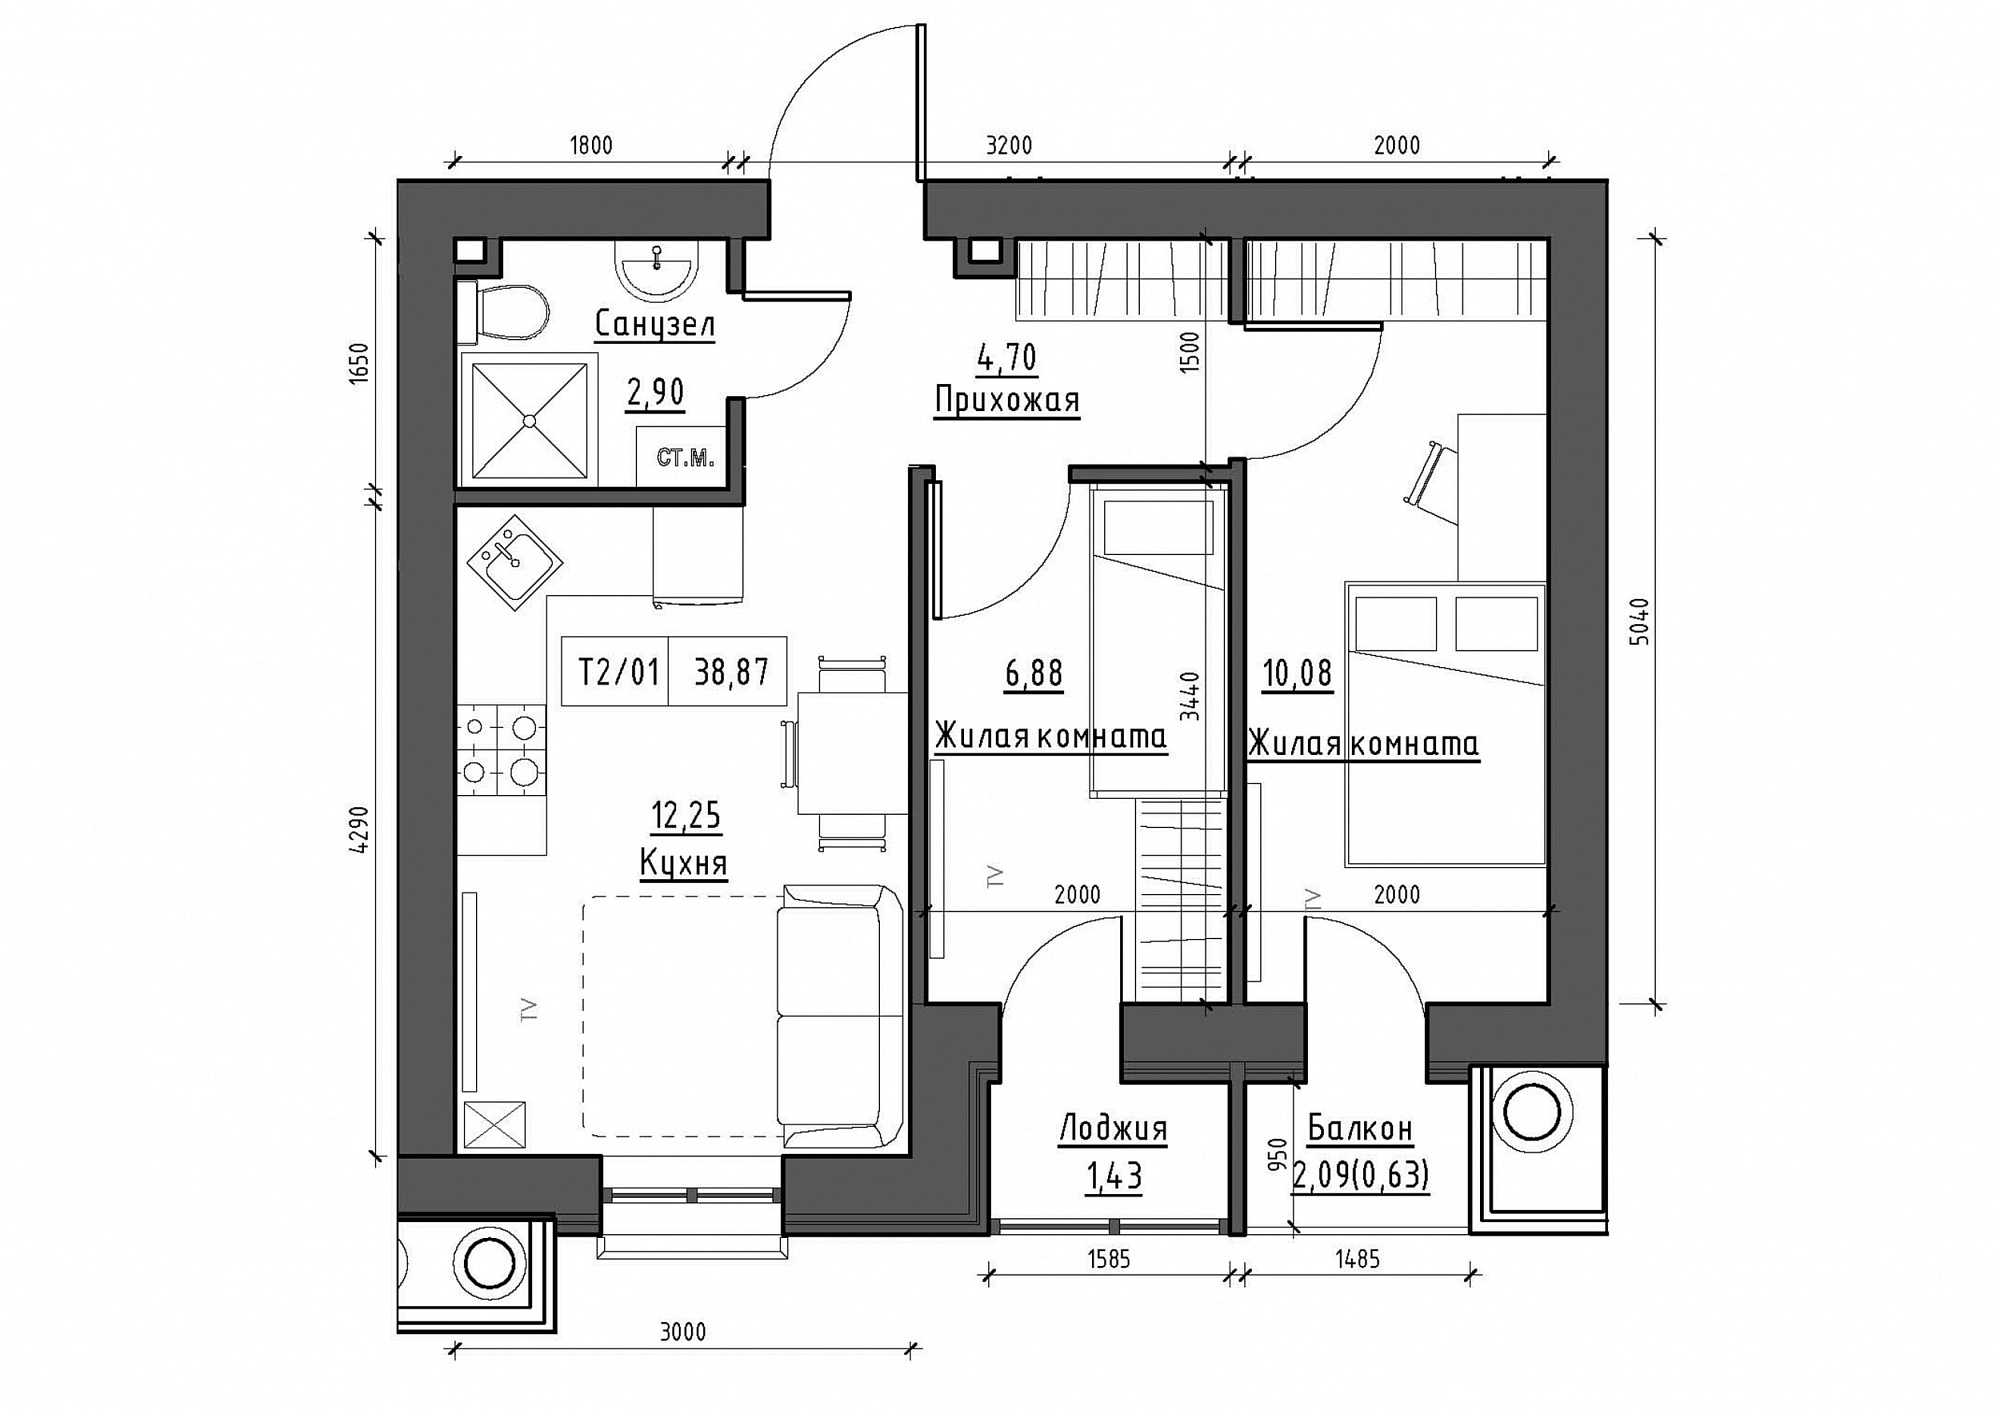 Планування 2-к квартира площею 38.87м2, KS-012-04/0005.